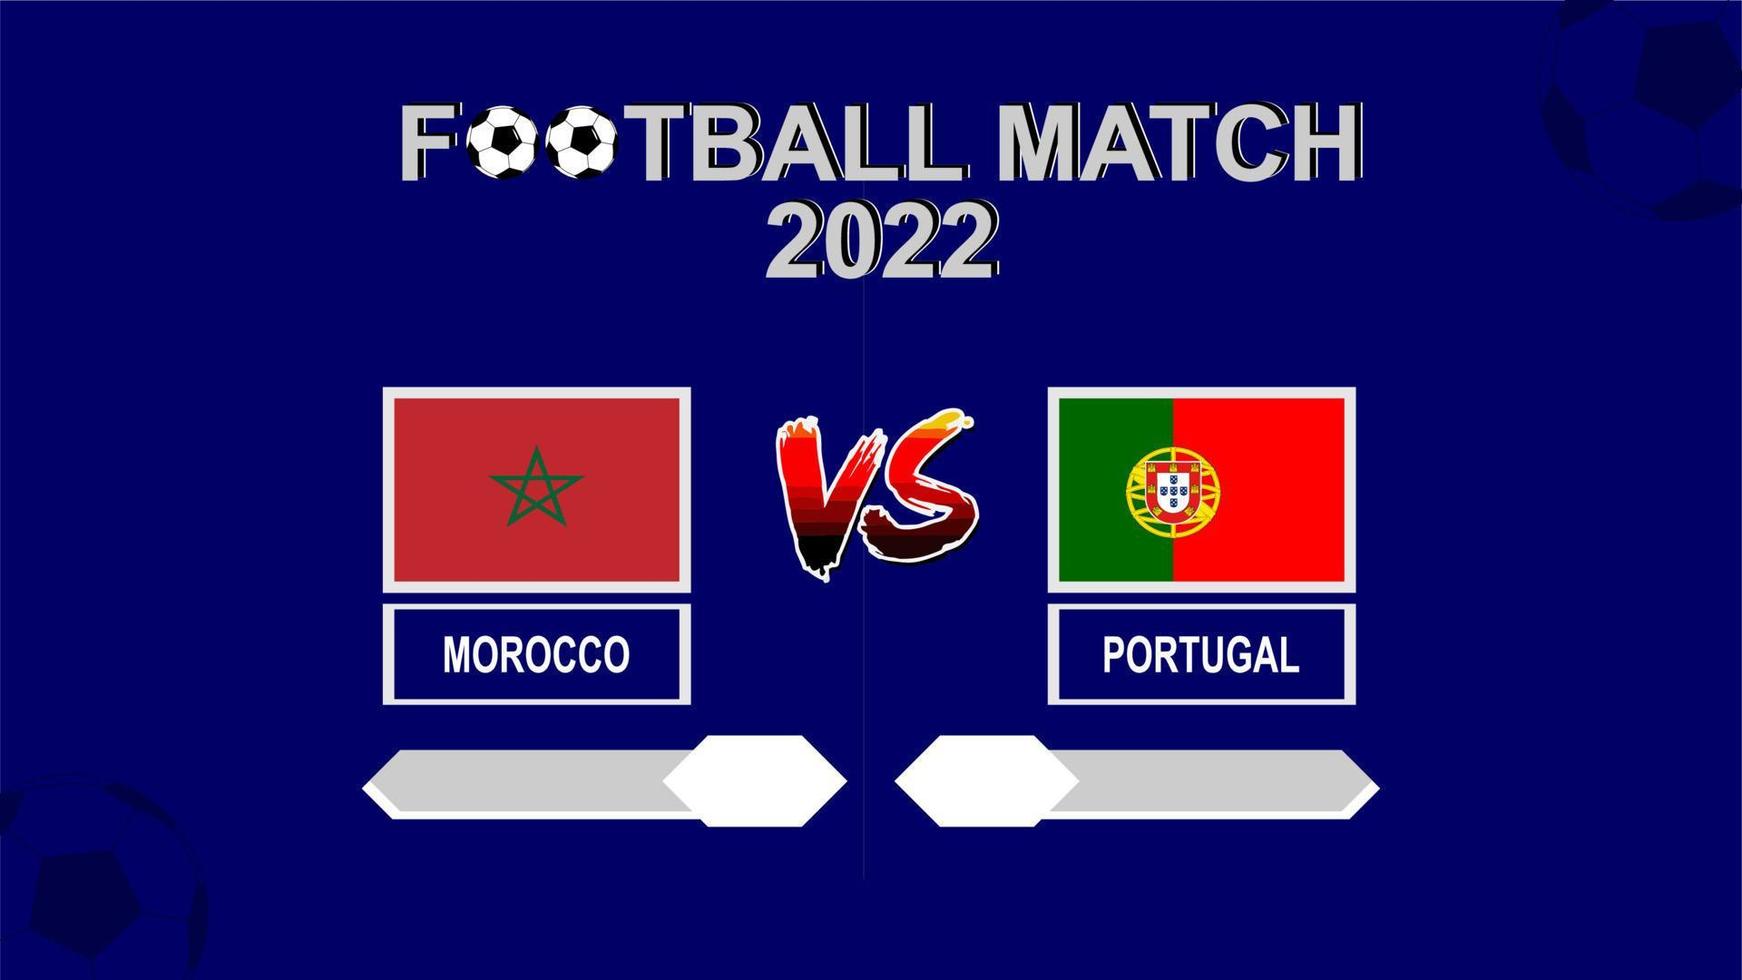 marruecos vs portugal copa de fútbol 2022 vector de fondo de plantilla azul para calendario o resultado cuartos de final